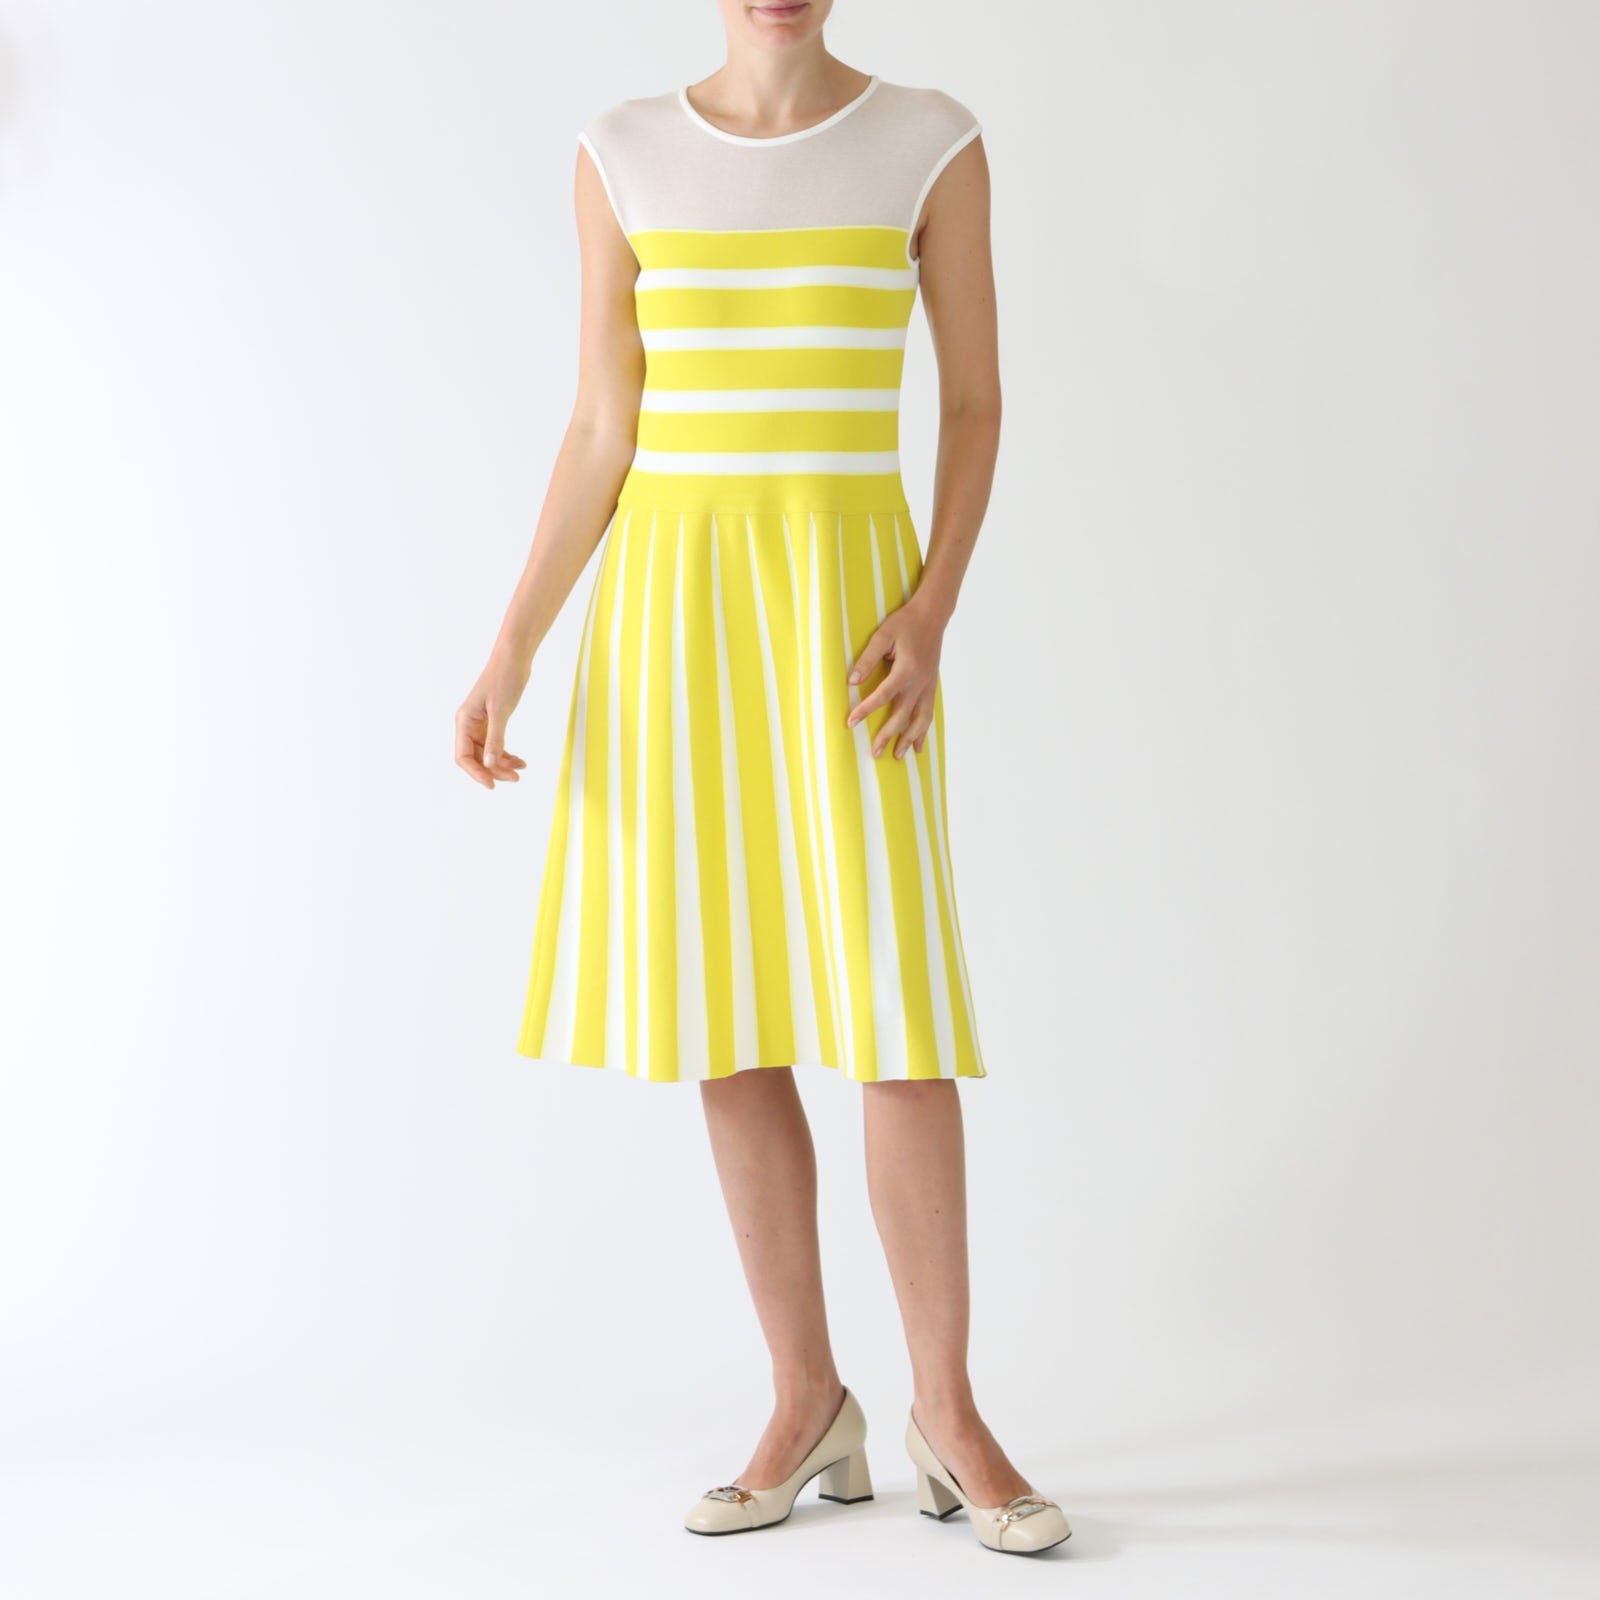 Bright Sulphur Striped A-Line Dress